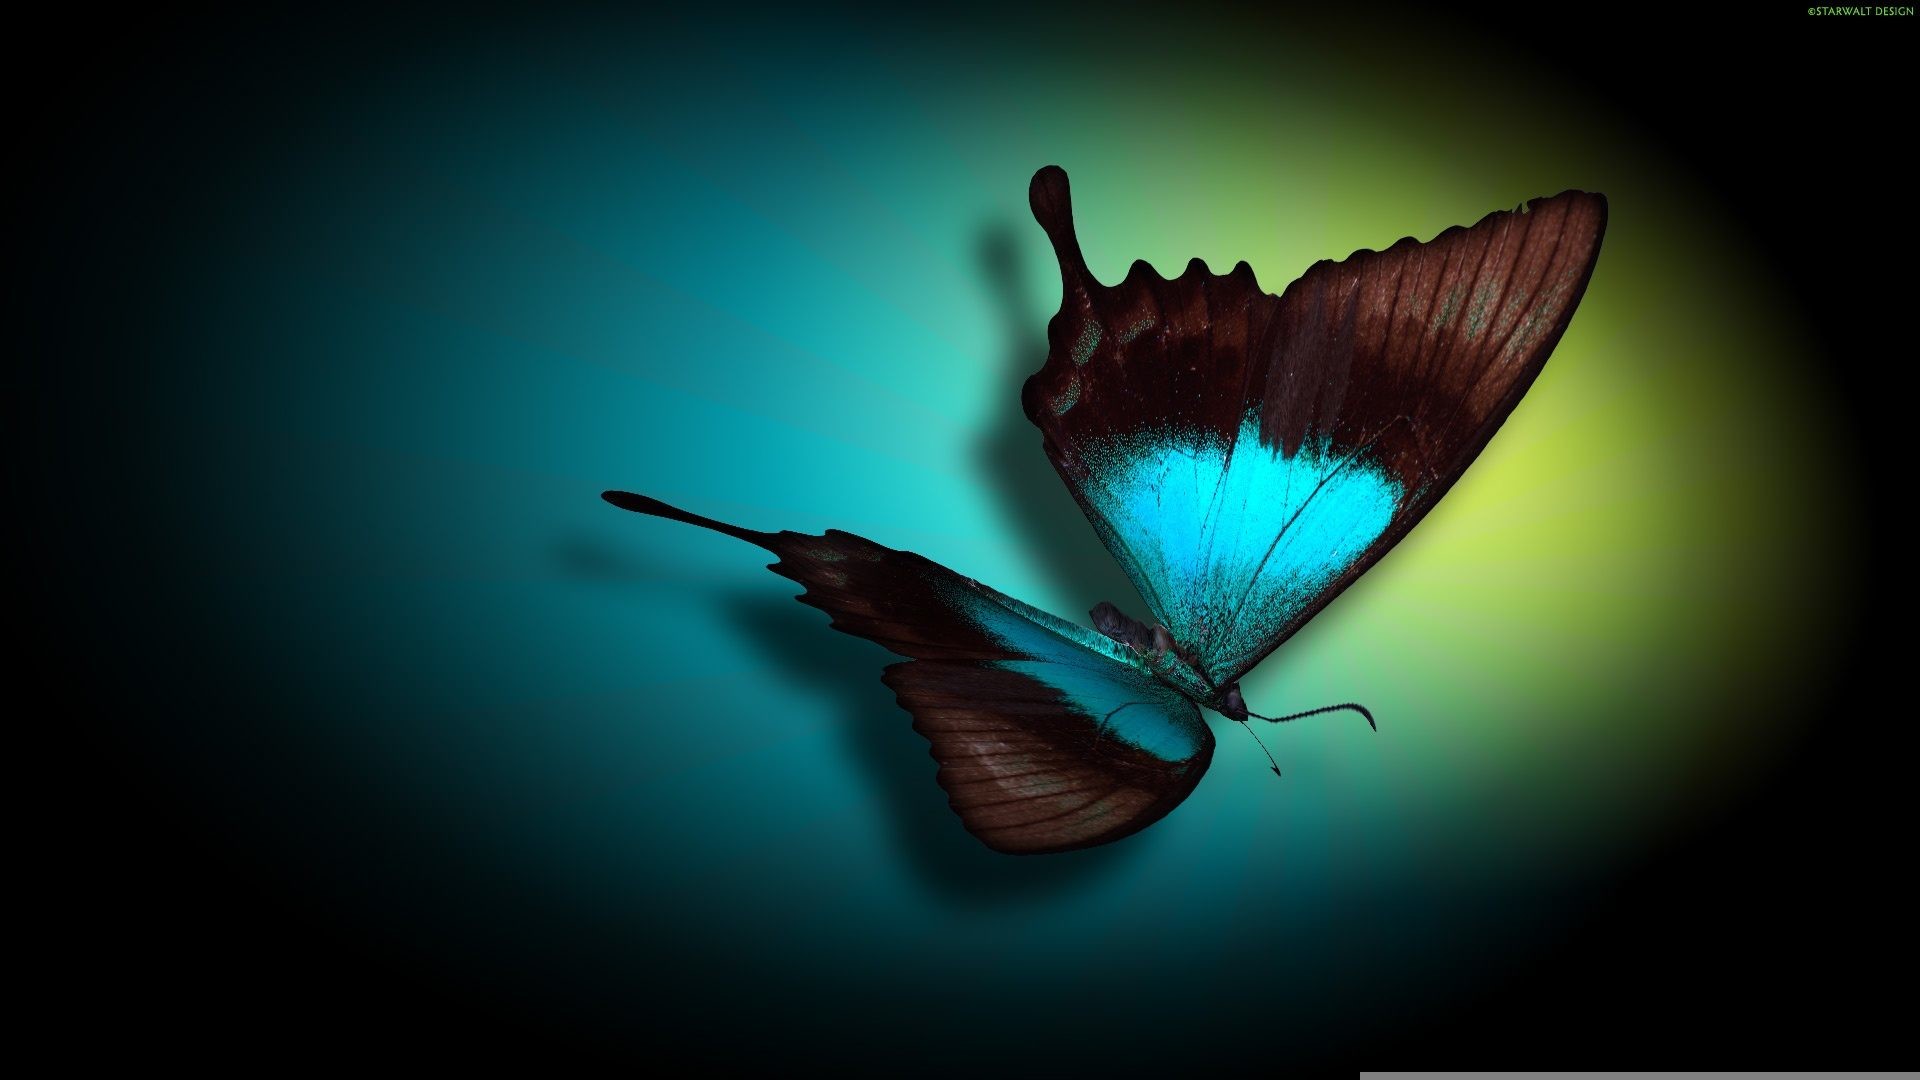 1920x1080 Morpho Butterfly HD Wallpaper Free Download For Desktop